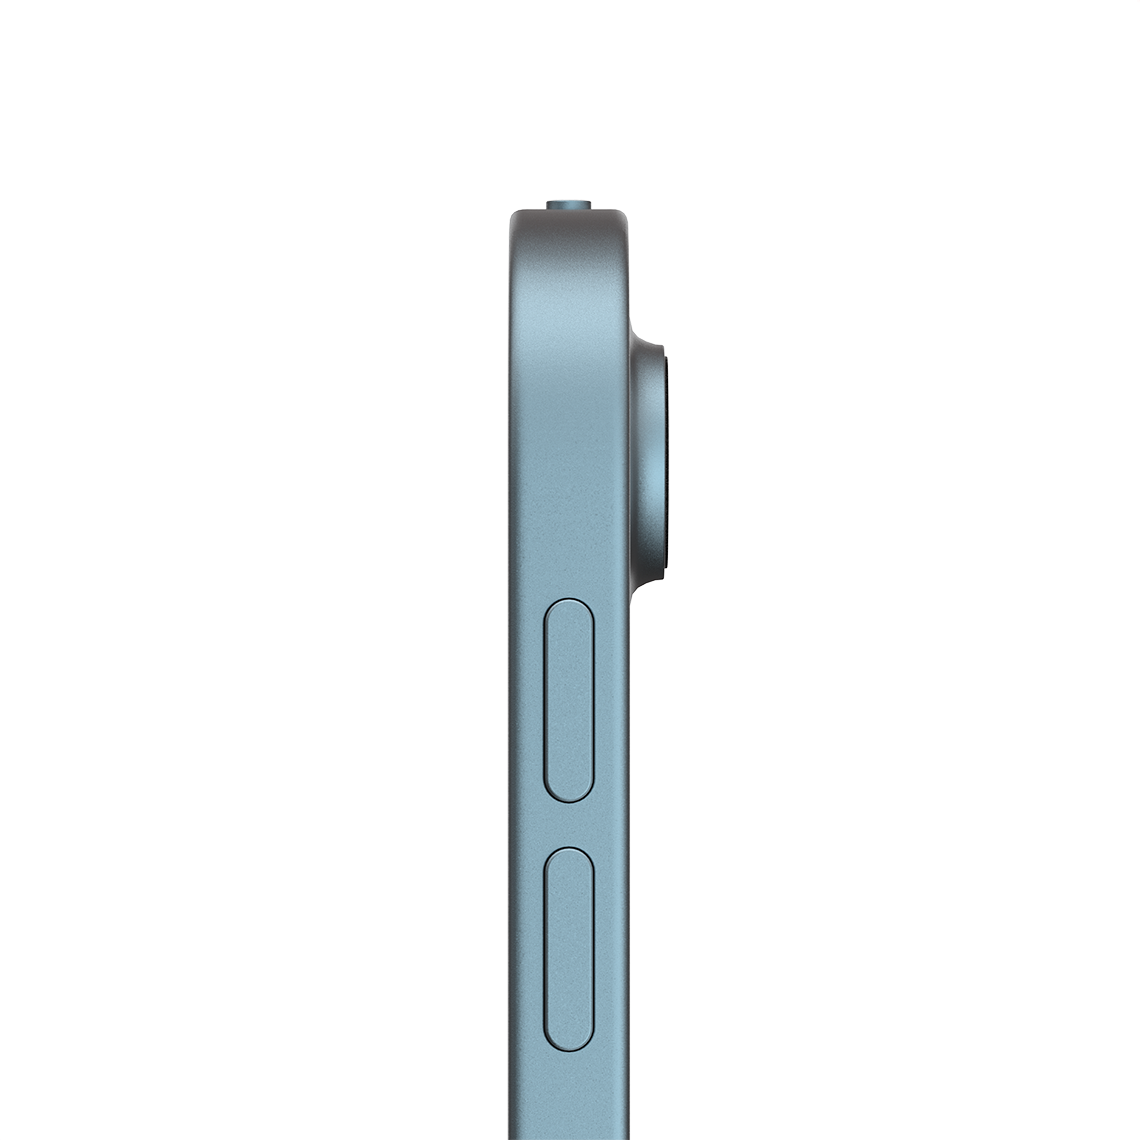 Apple iPad Air 10.9-inch 5th Generation - Blue - 64GB, Wi-Fi + Cellular, Grade A